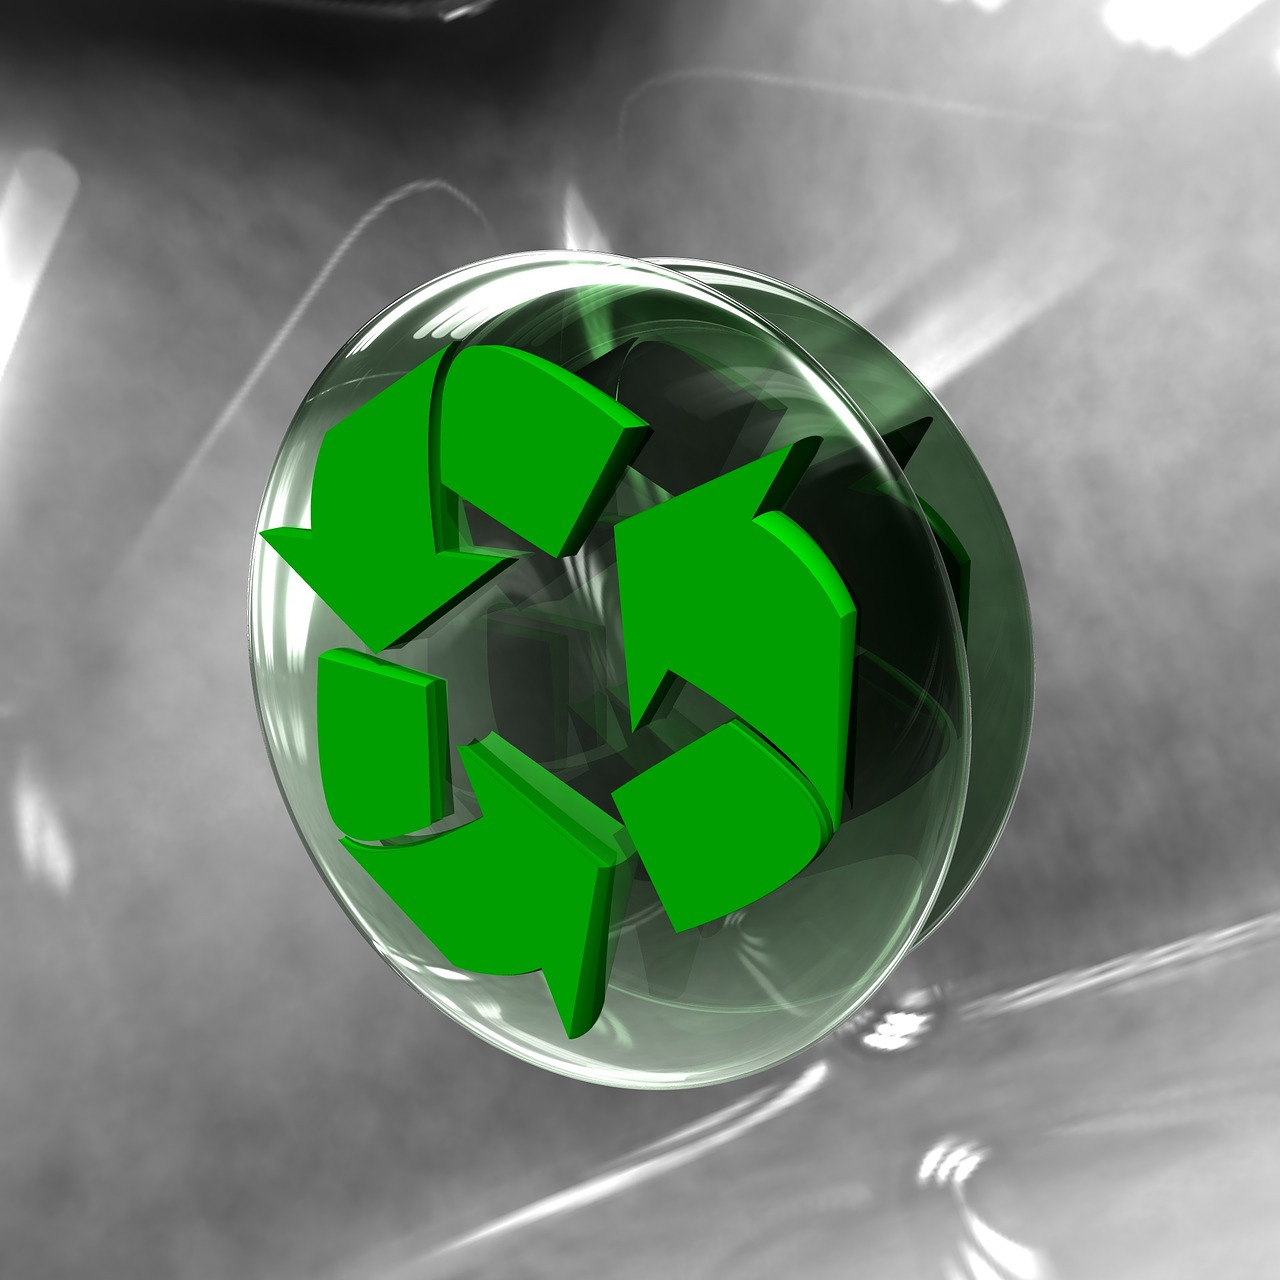 La importancia de un sistema integrado de gestión de residuos